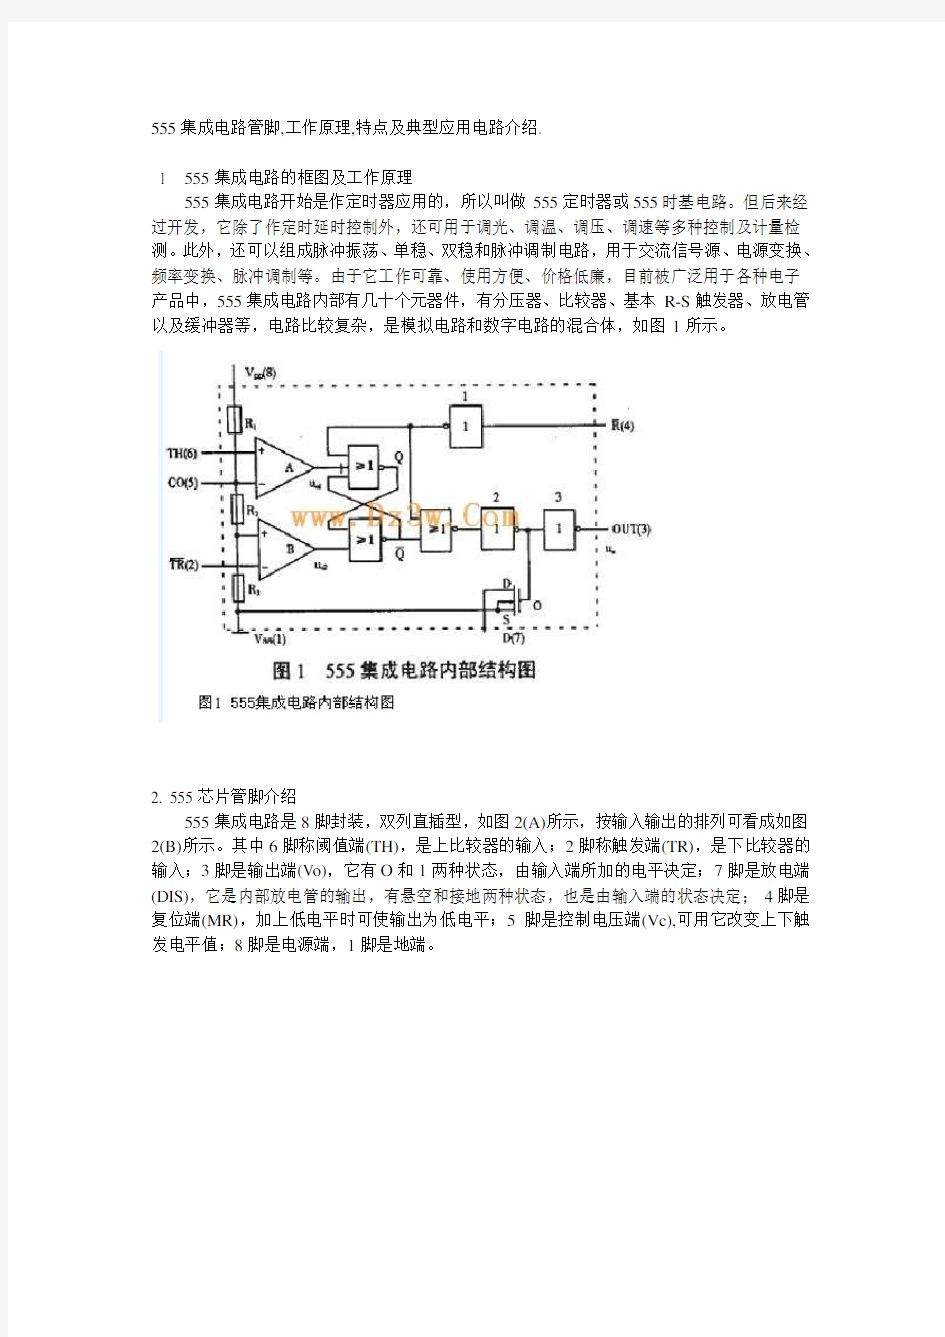 555集成电路管脚,工作原理,特点及典型应用电路介绍